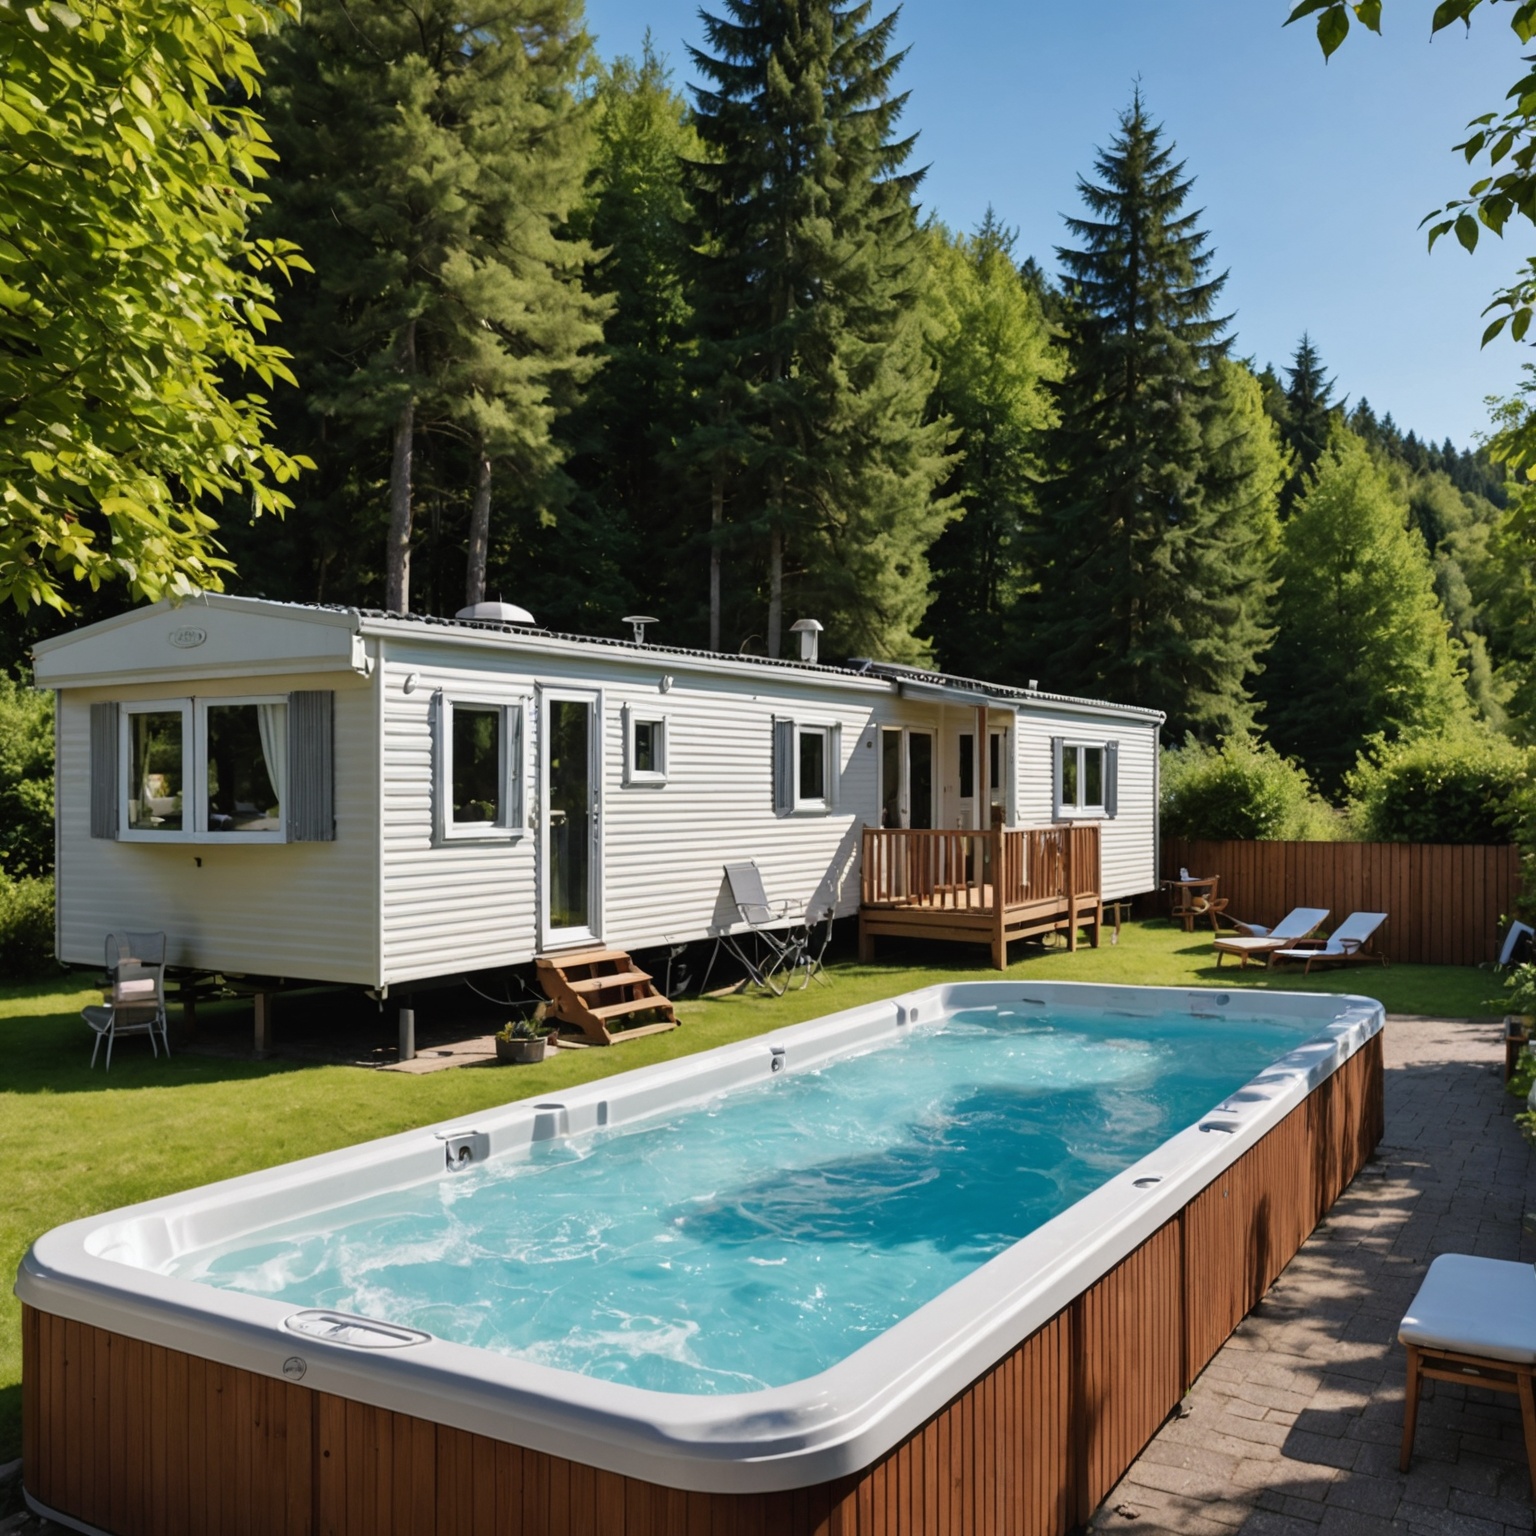 Découvrez le Confort du Camping en Mobil-Home pour votre Cure Thermale à Cambo-les-Bains